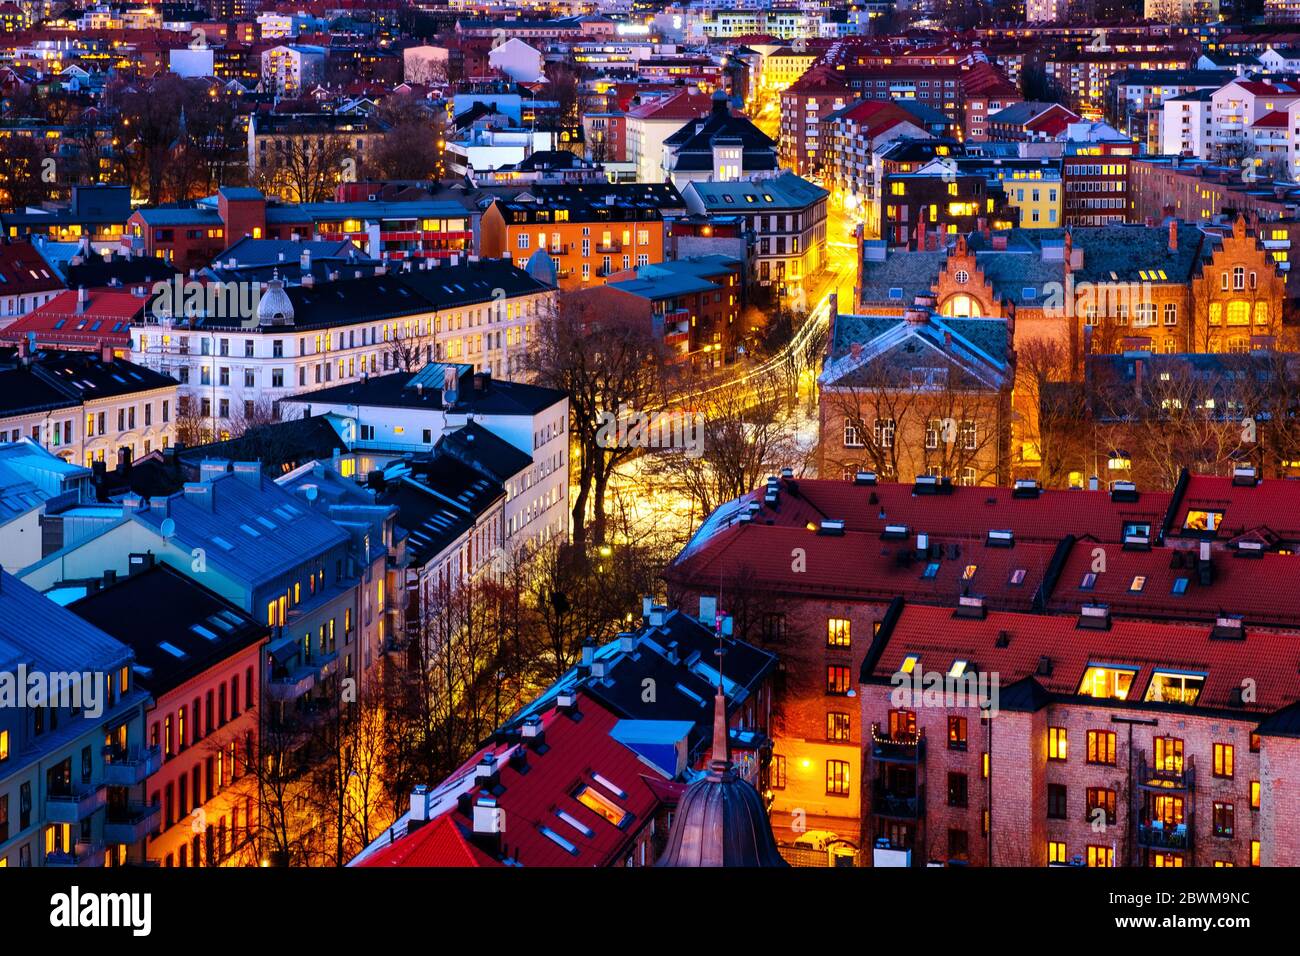 Oslo, Noruega. Vista nocturna de la zona de Sentrum de Oslo, Noruega, con edificios modernos e históricos y tráfico de coches durante el invierno Foto de stock